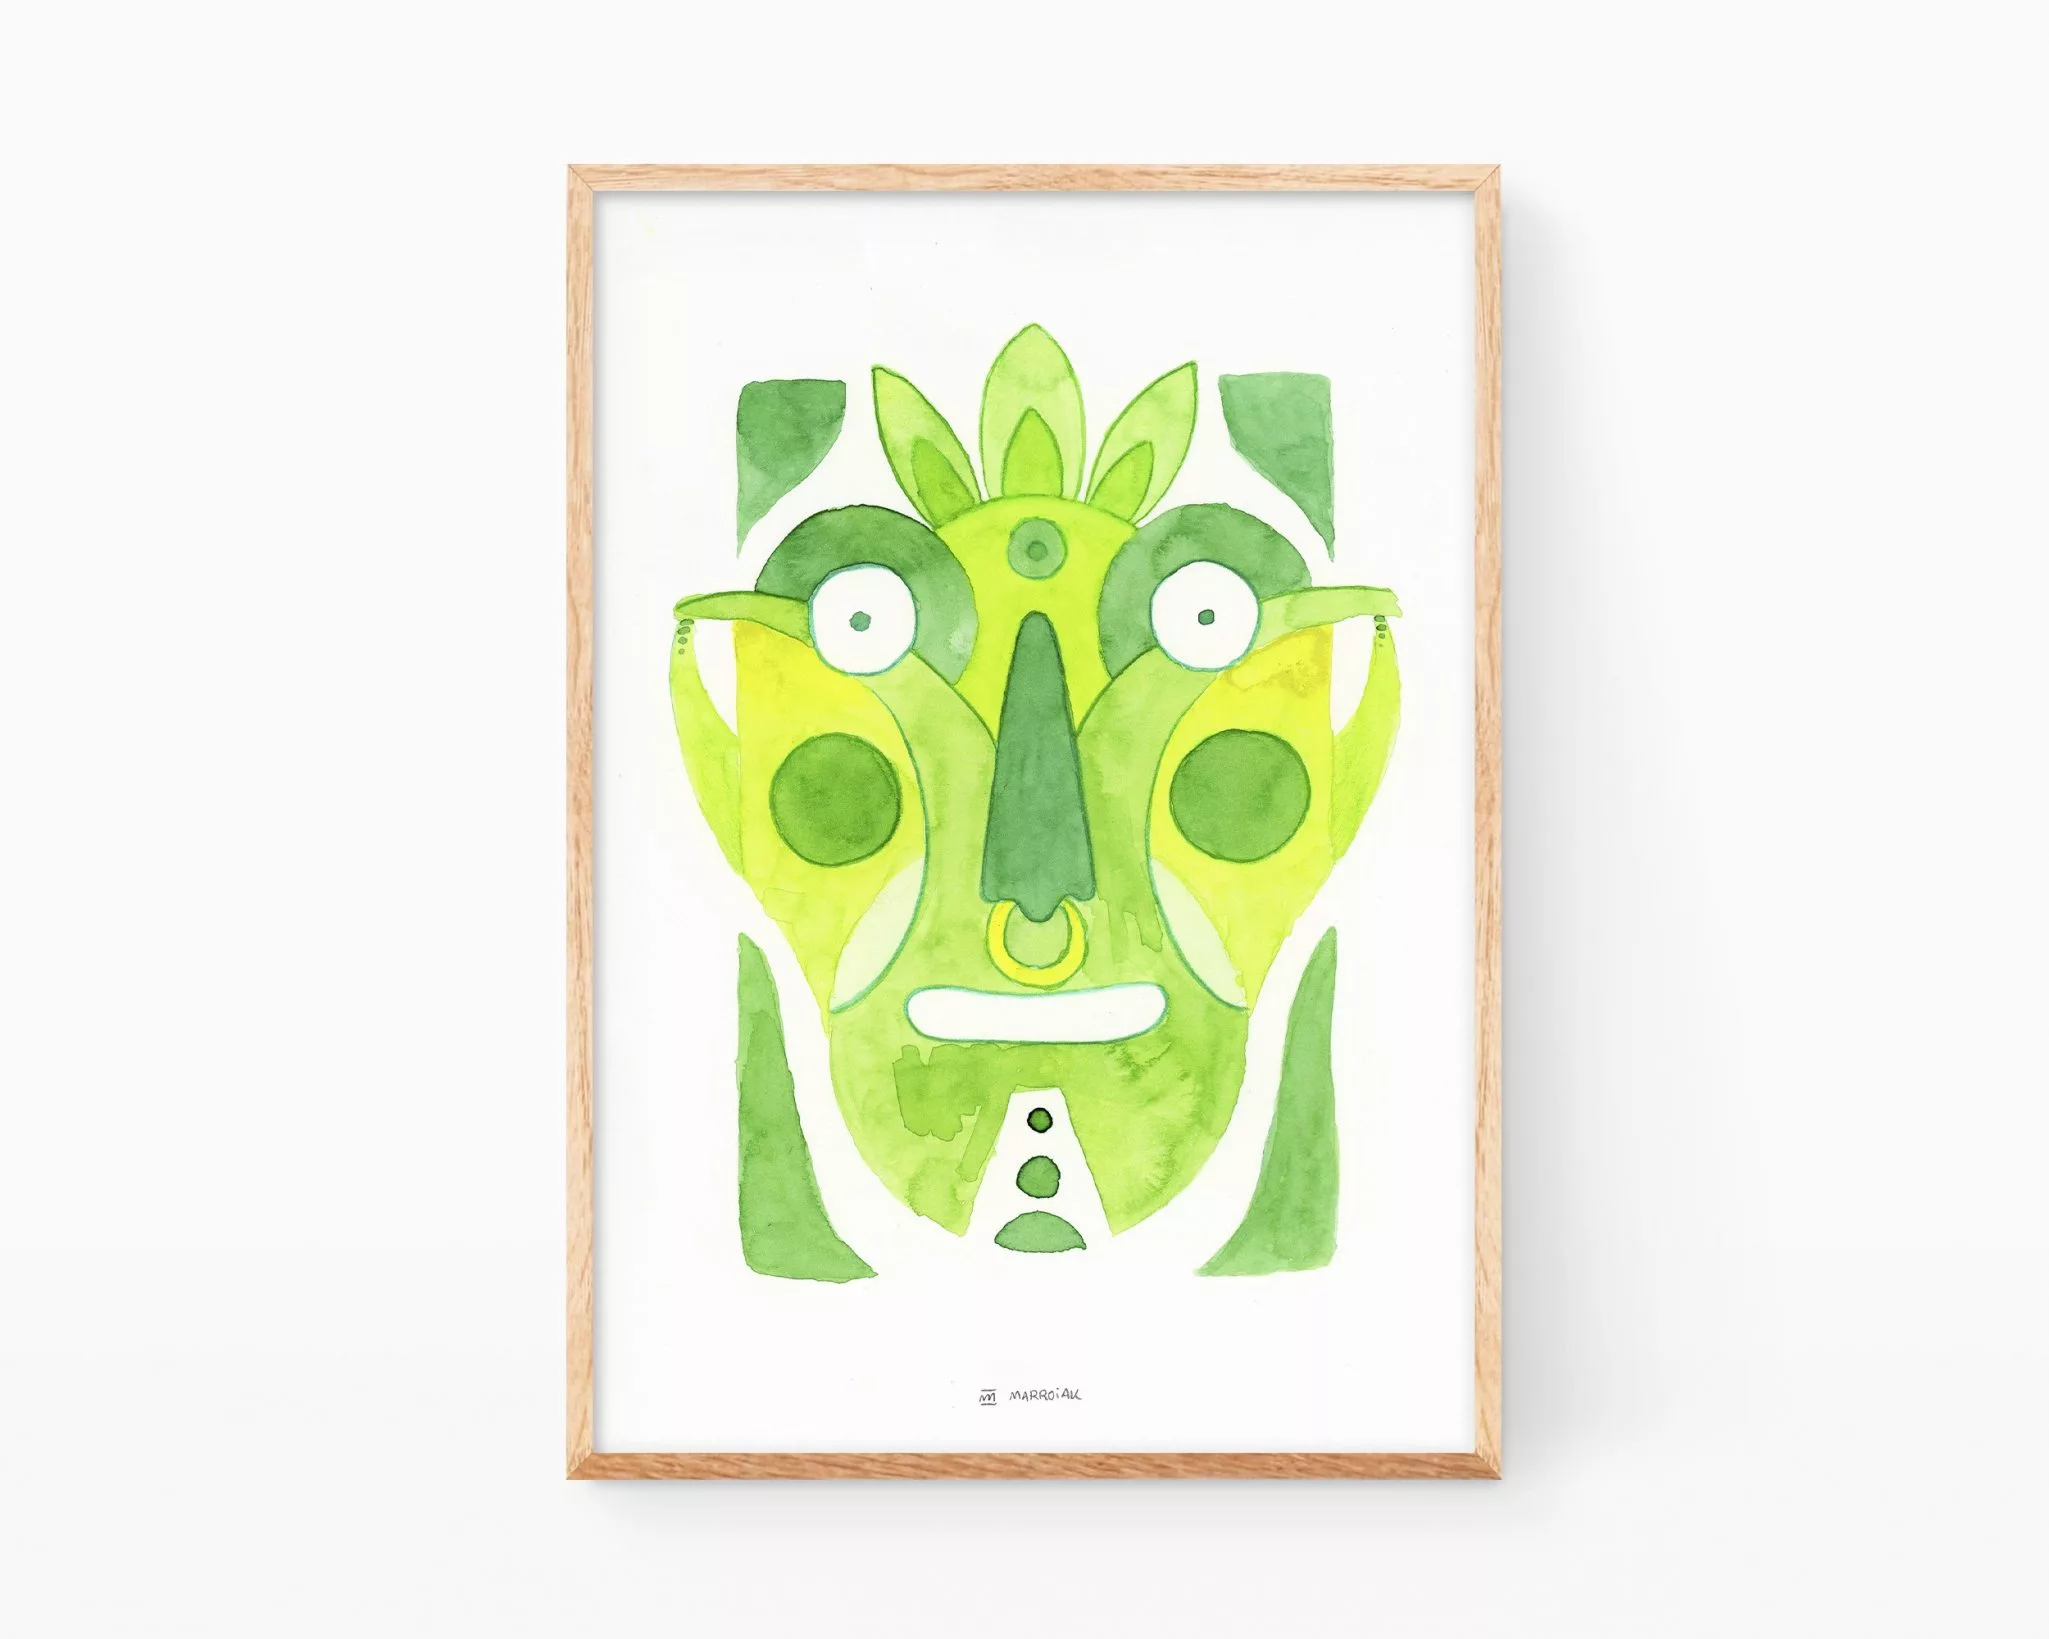 Cuadro para enmarcar decorativo con una pintura en acuarela de una cara semi abstracta. Color verde vegetal